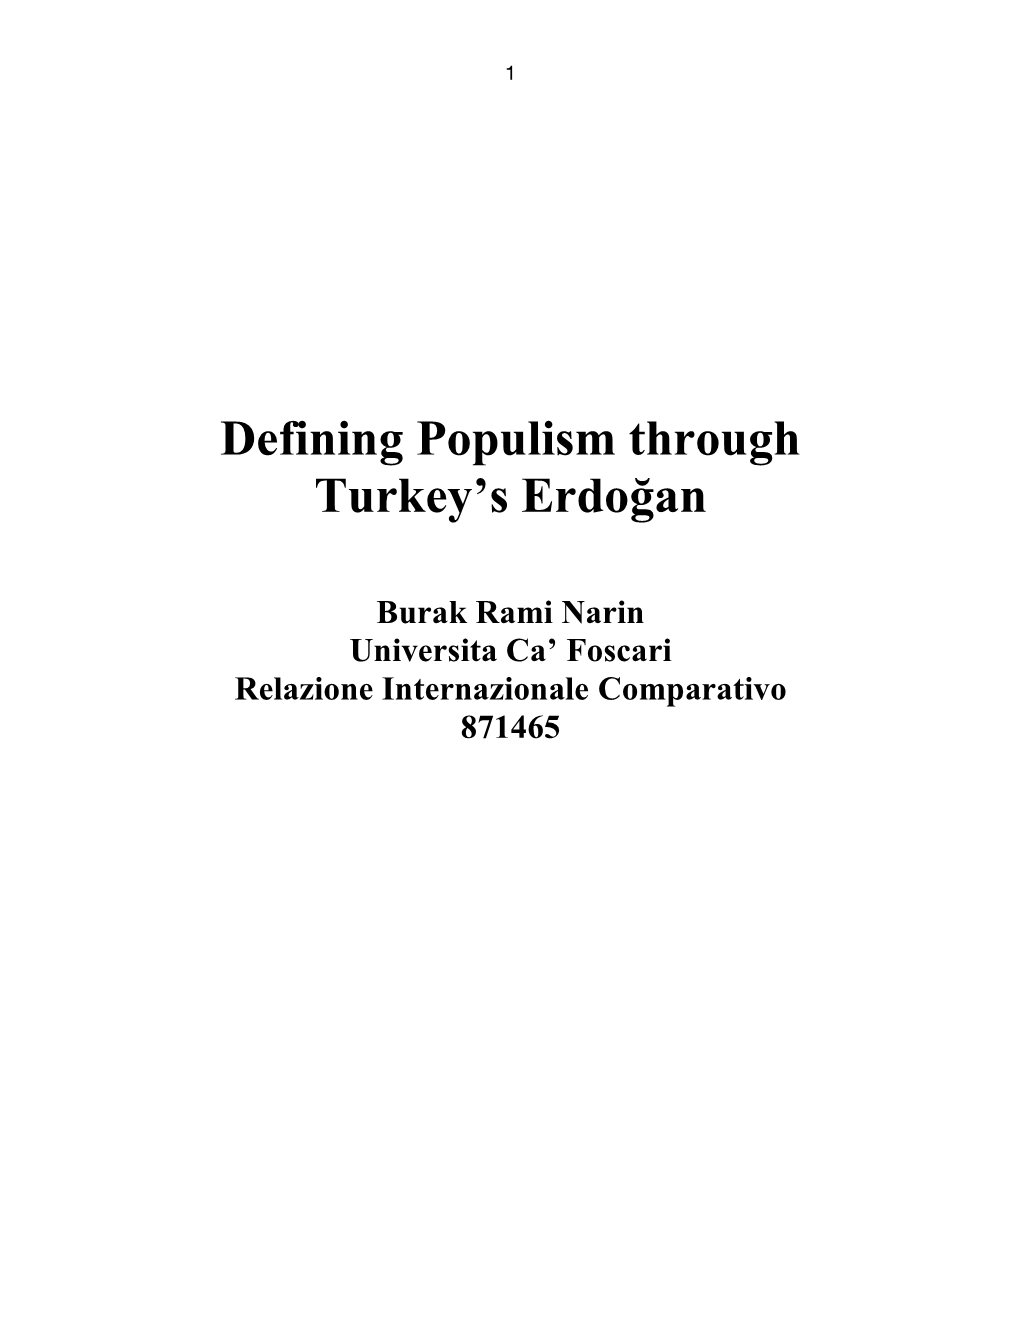 Defining Populism Through Turkey's Erdoğan